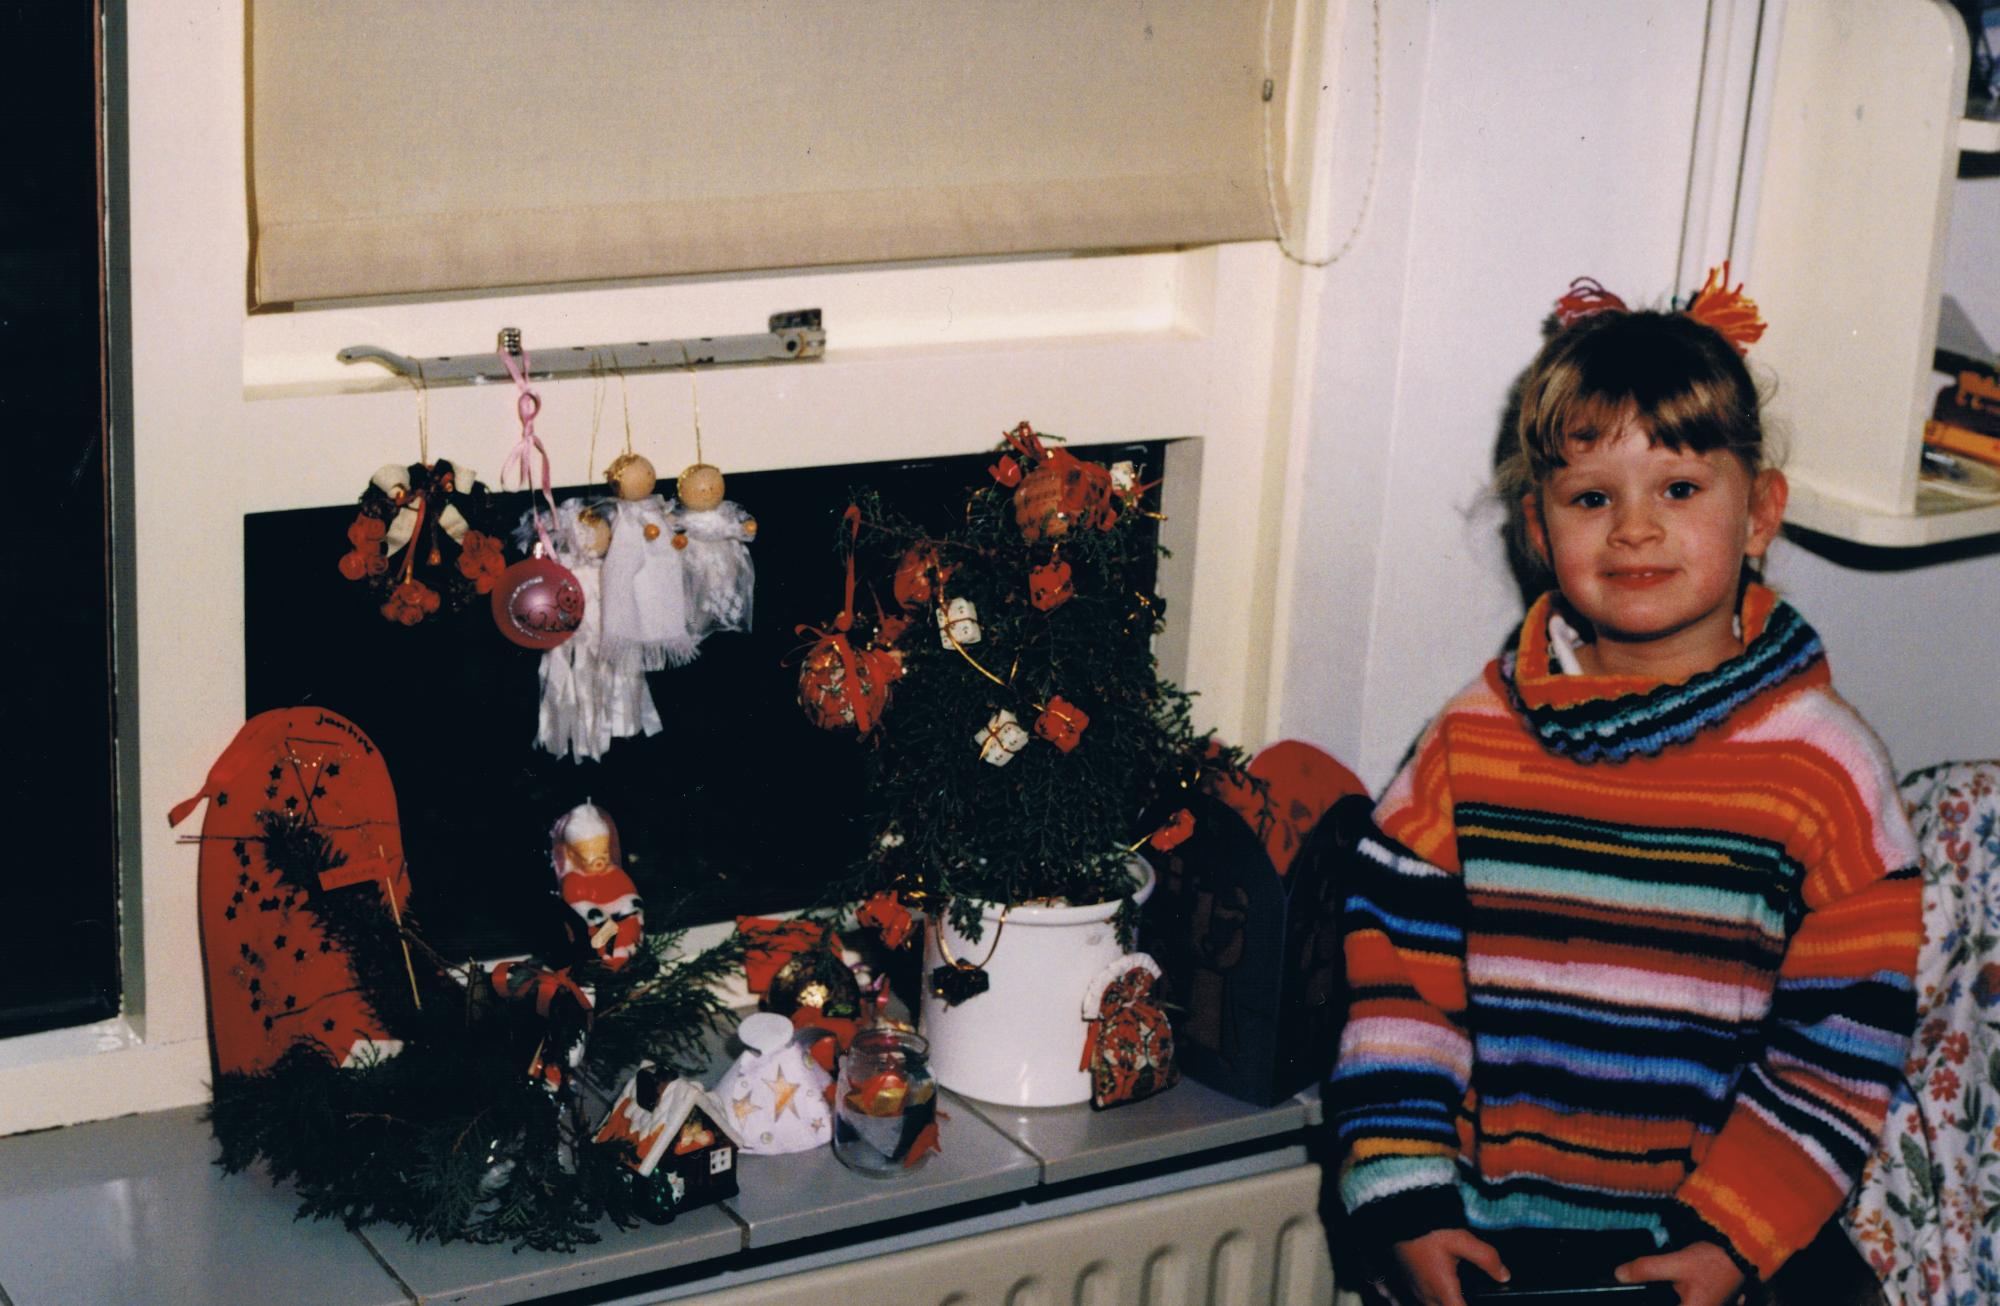 Jantine Huisman en su niñéz con decoraciones navideñas. Foto gentileza de Jantine Huisman